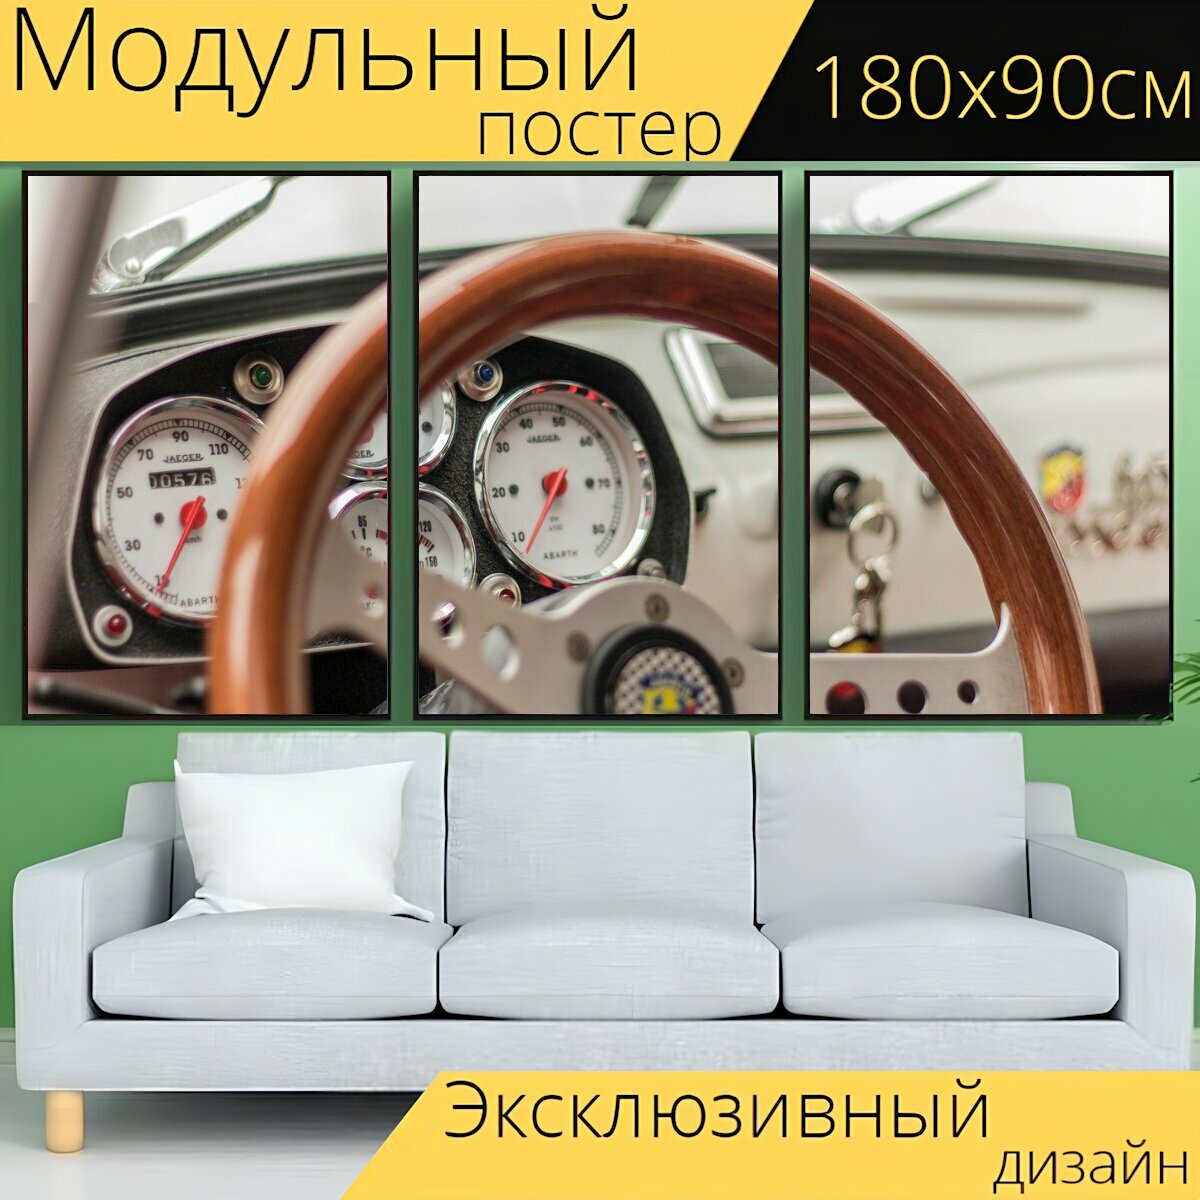 Модульный постер "Рулевое колесо, авто, старожил" 180 x 90 см. для интерьера